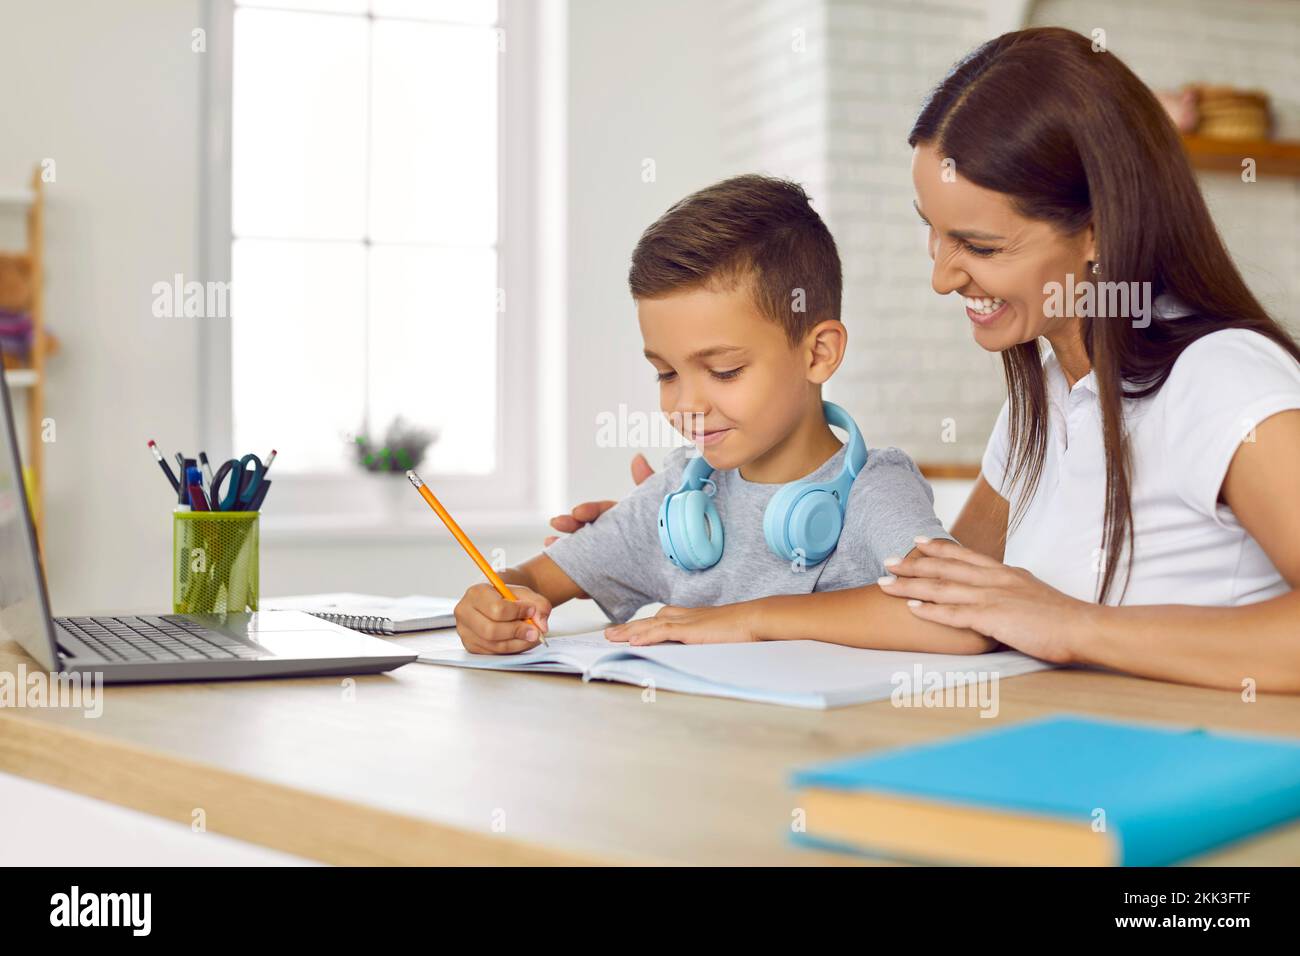 Feliz, sonriente madre ayudando a su hijo pequeño mientras él está haciendo su tarea escolar Foto de stock